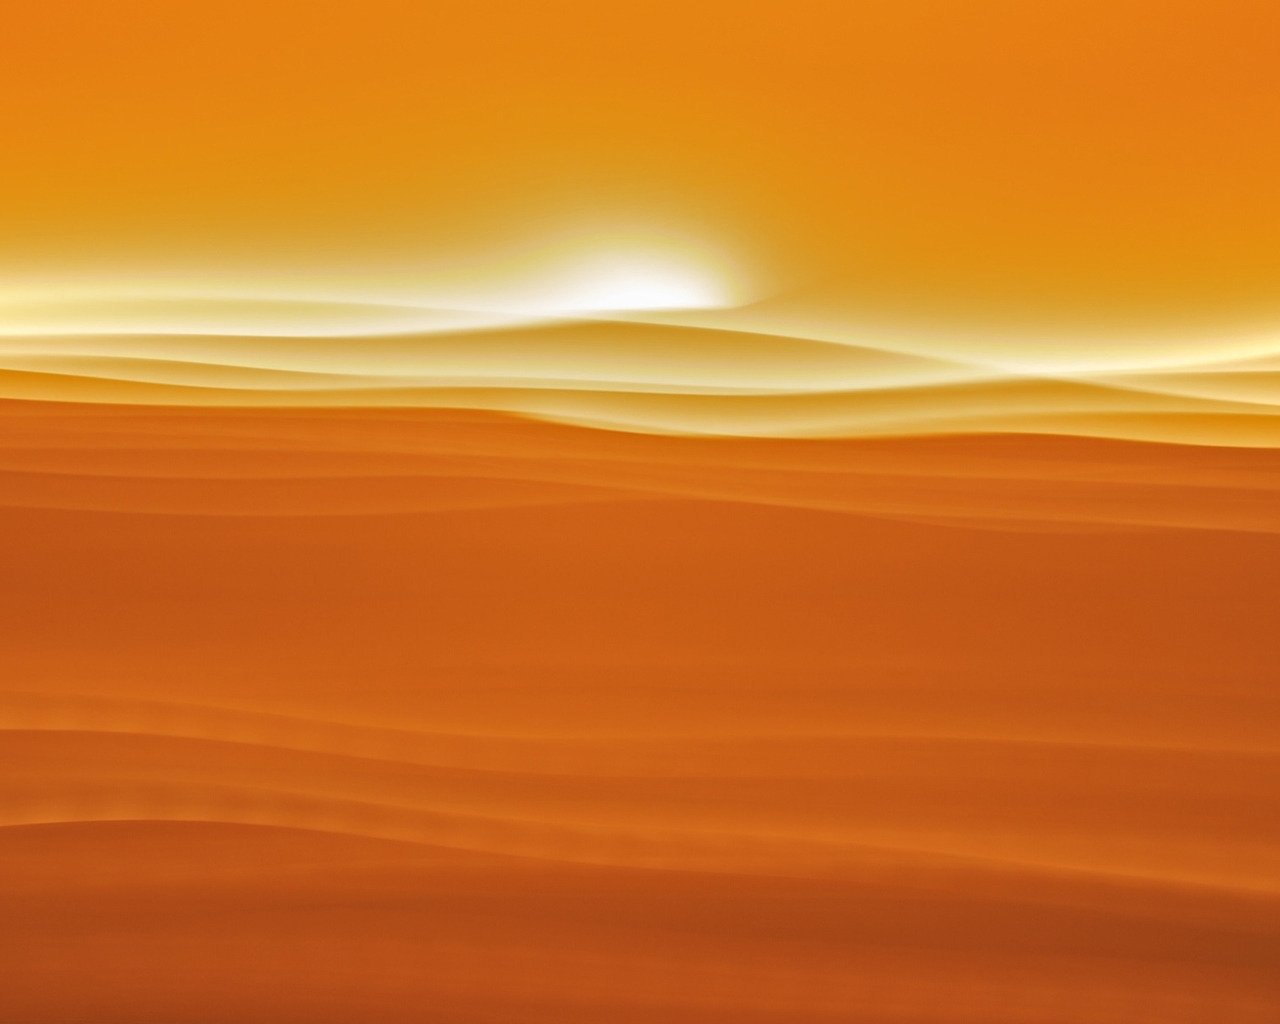 Desert sunlight for 1280 x 1024 resolution